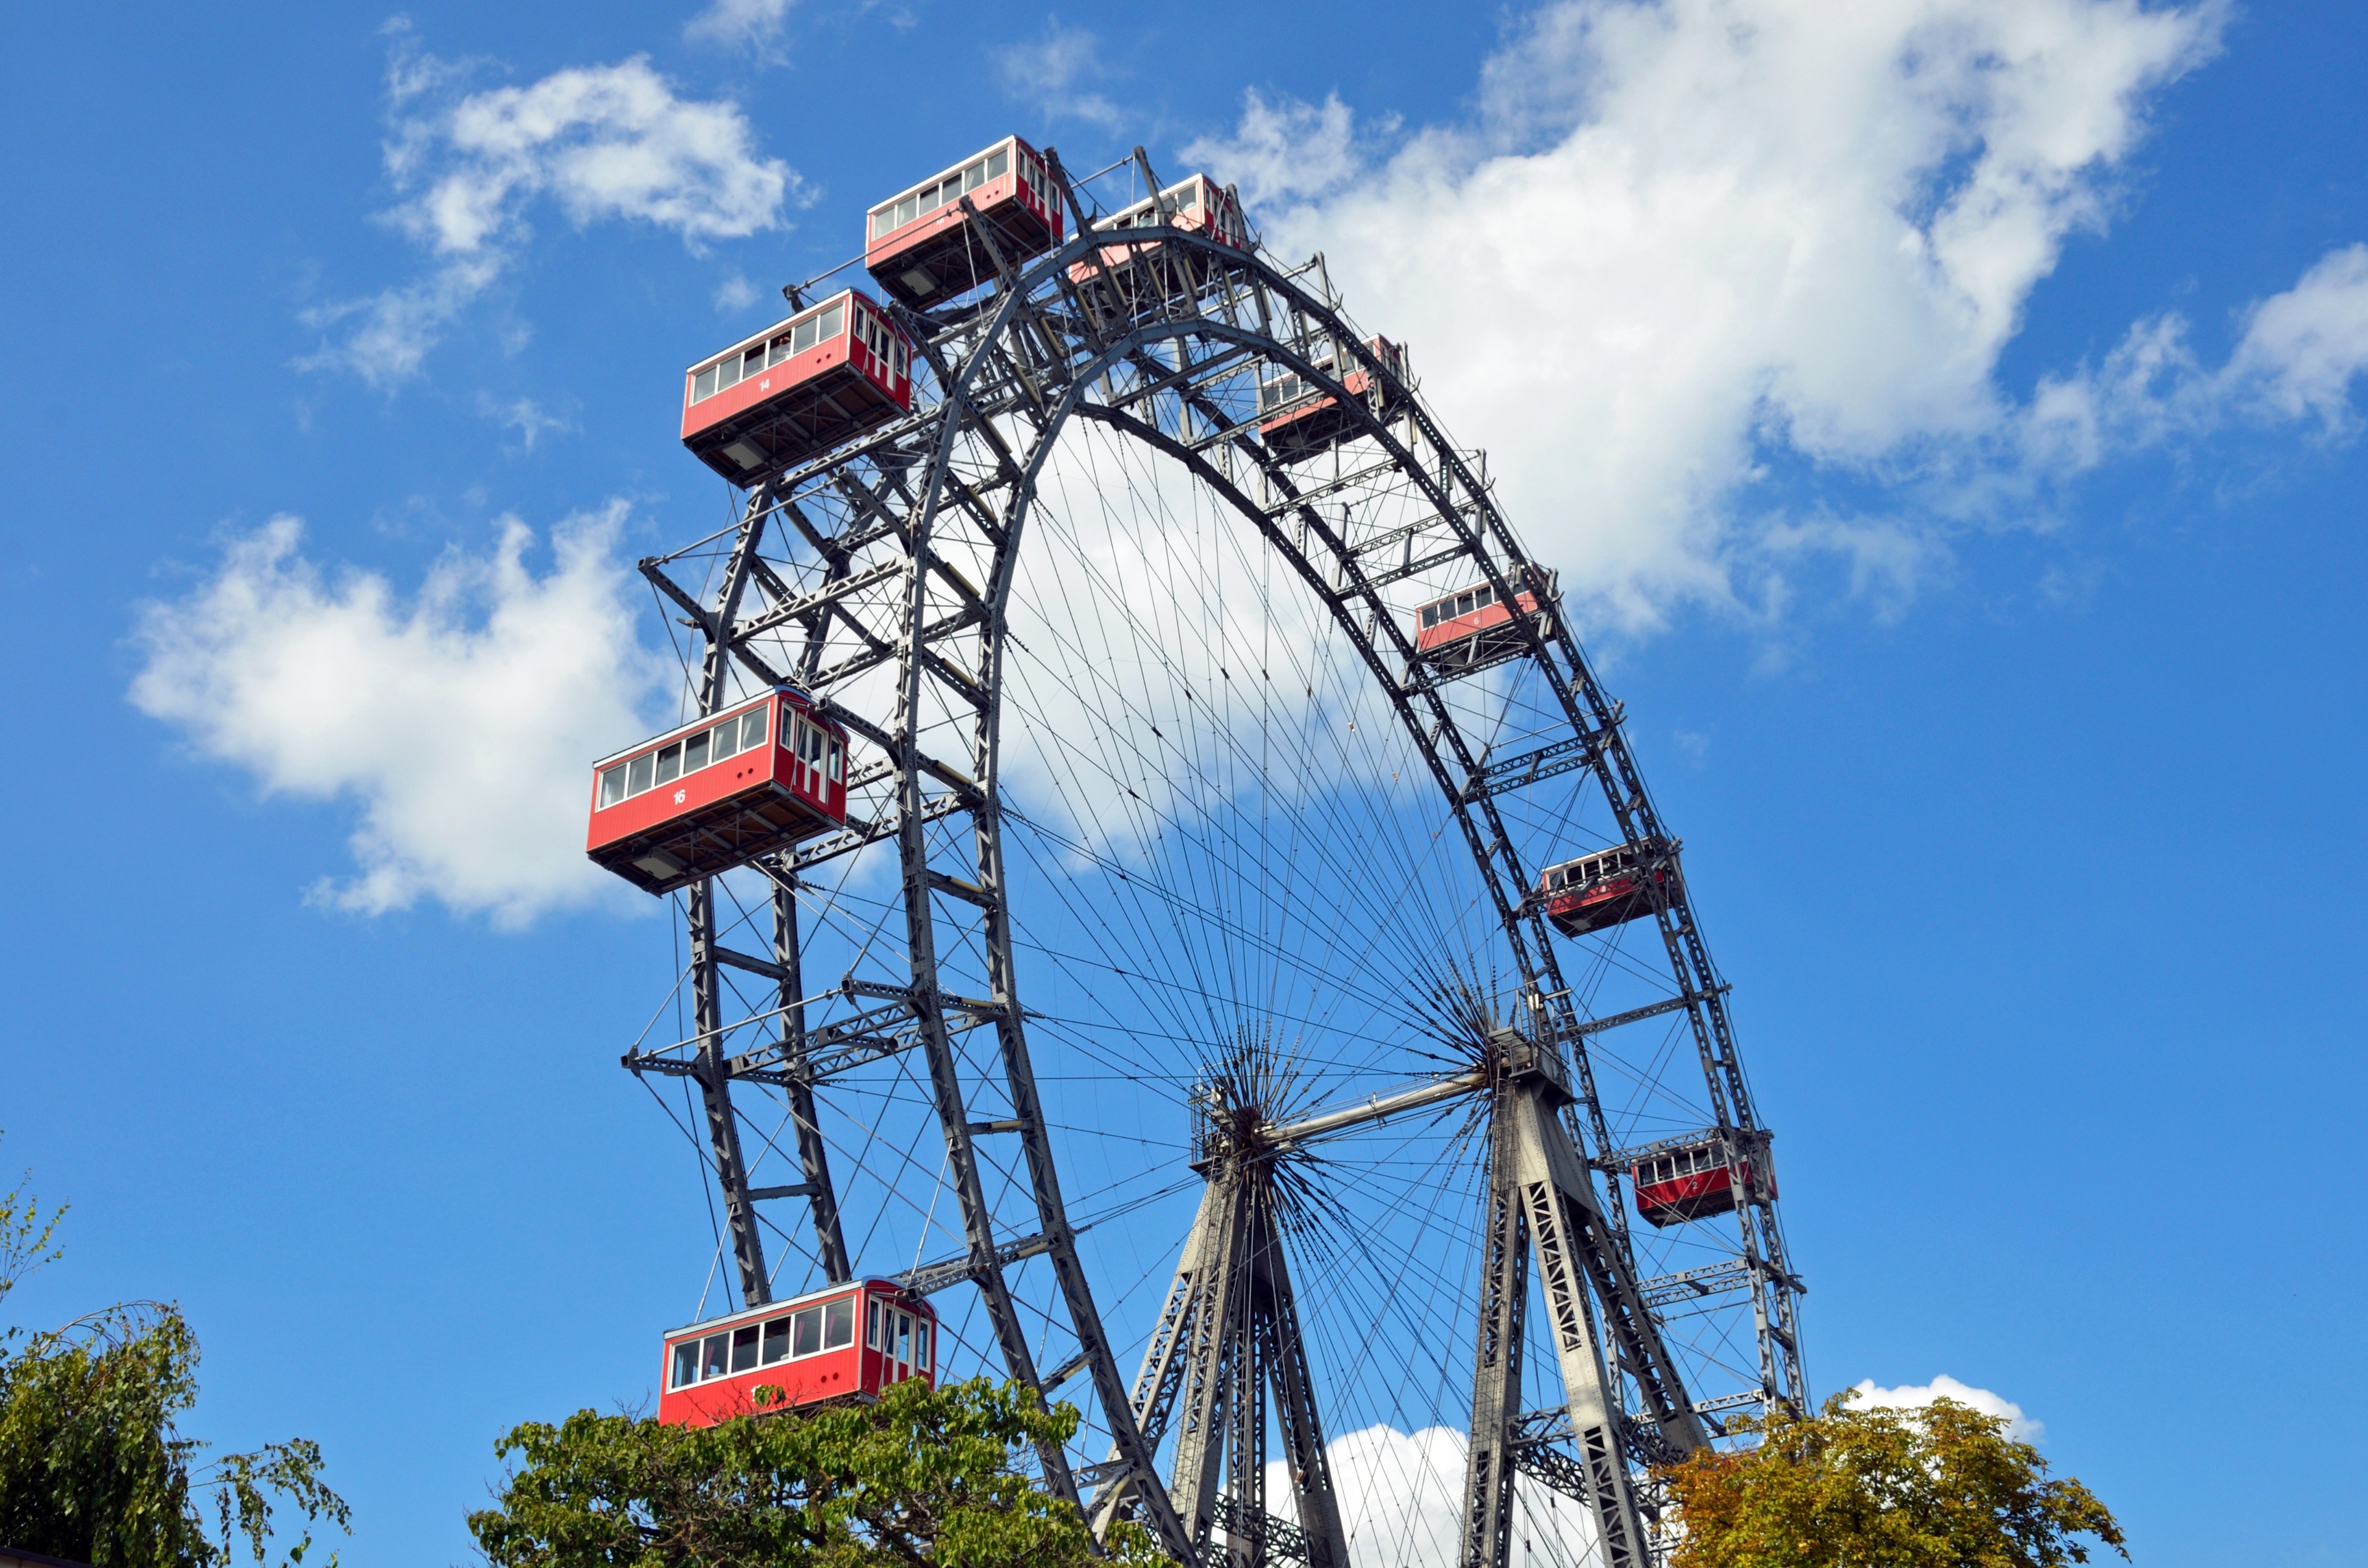 Giant Ferris Wheel Tours - Book Now